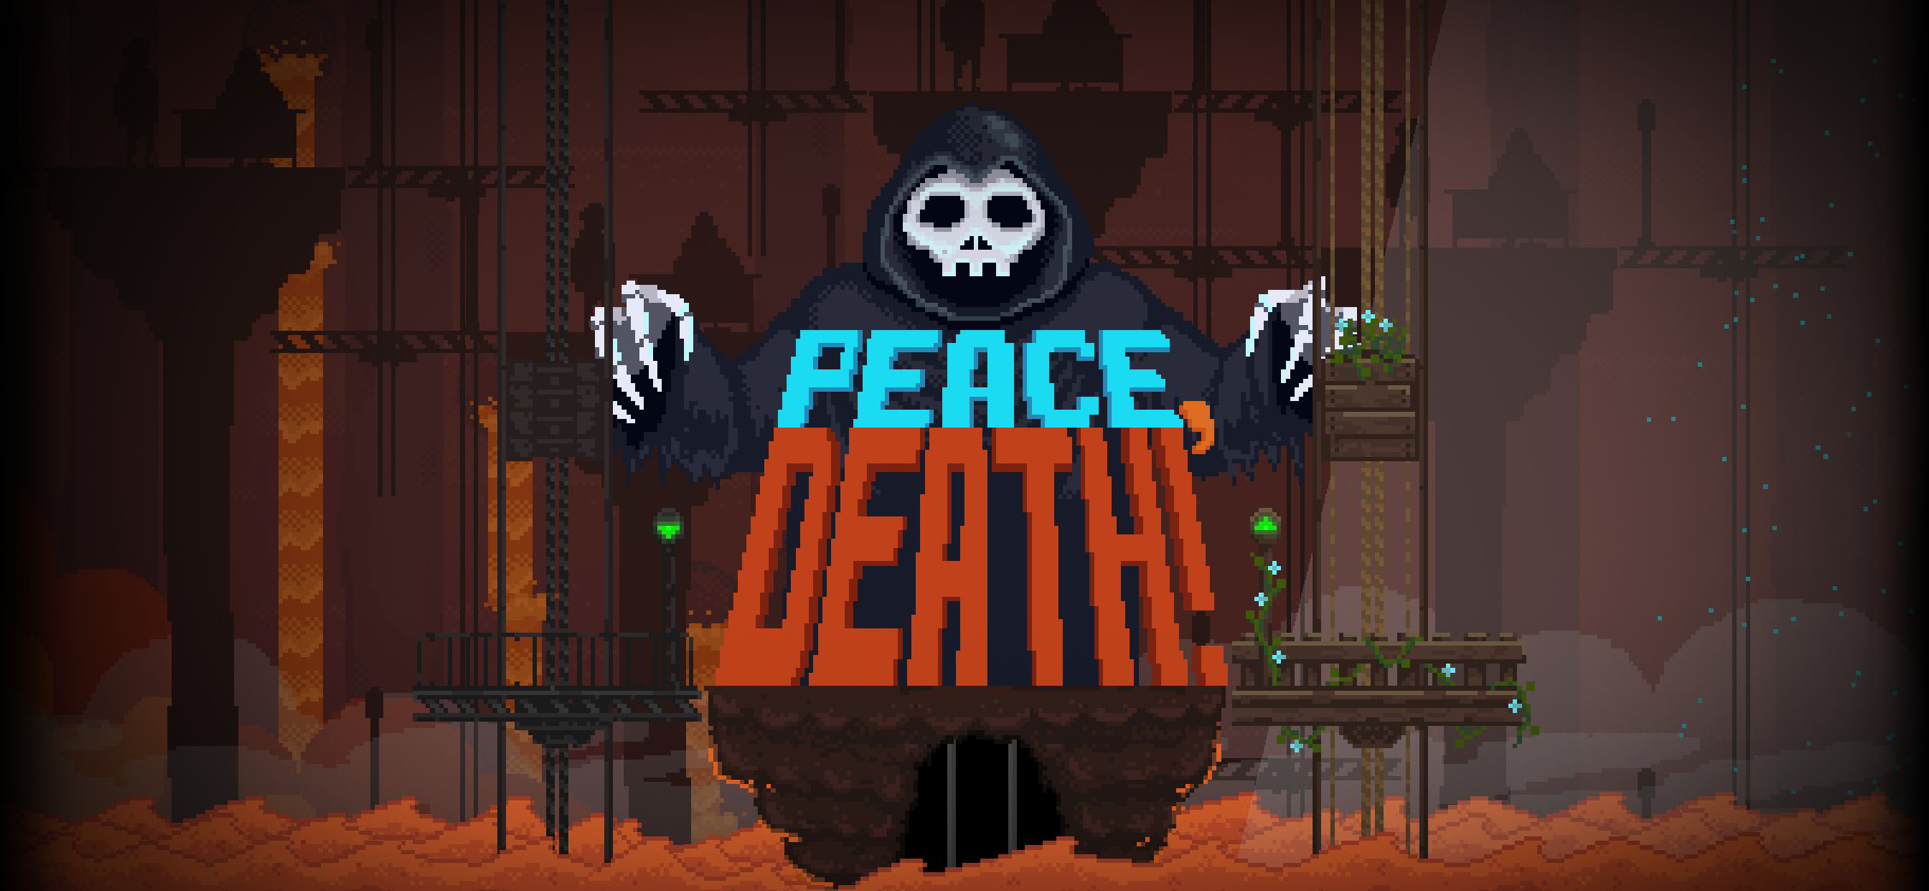 Peace Death 2